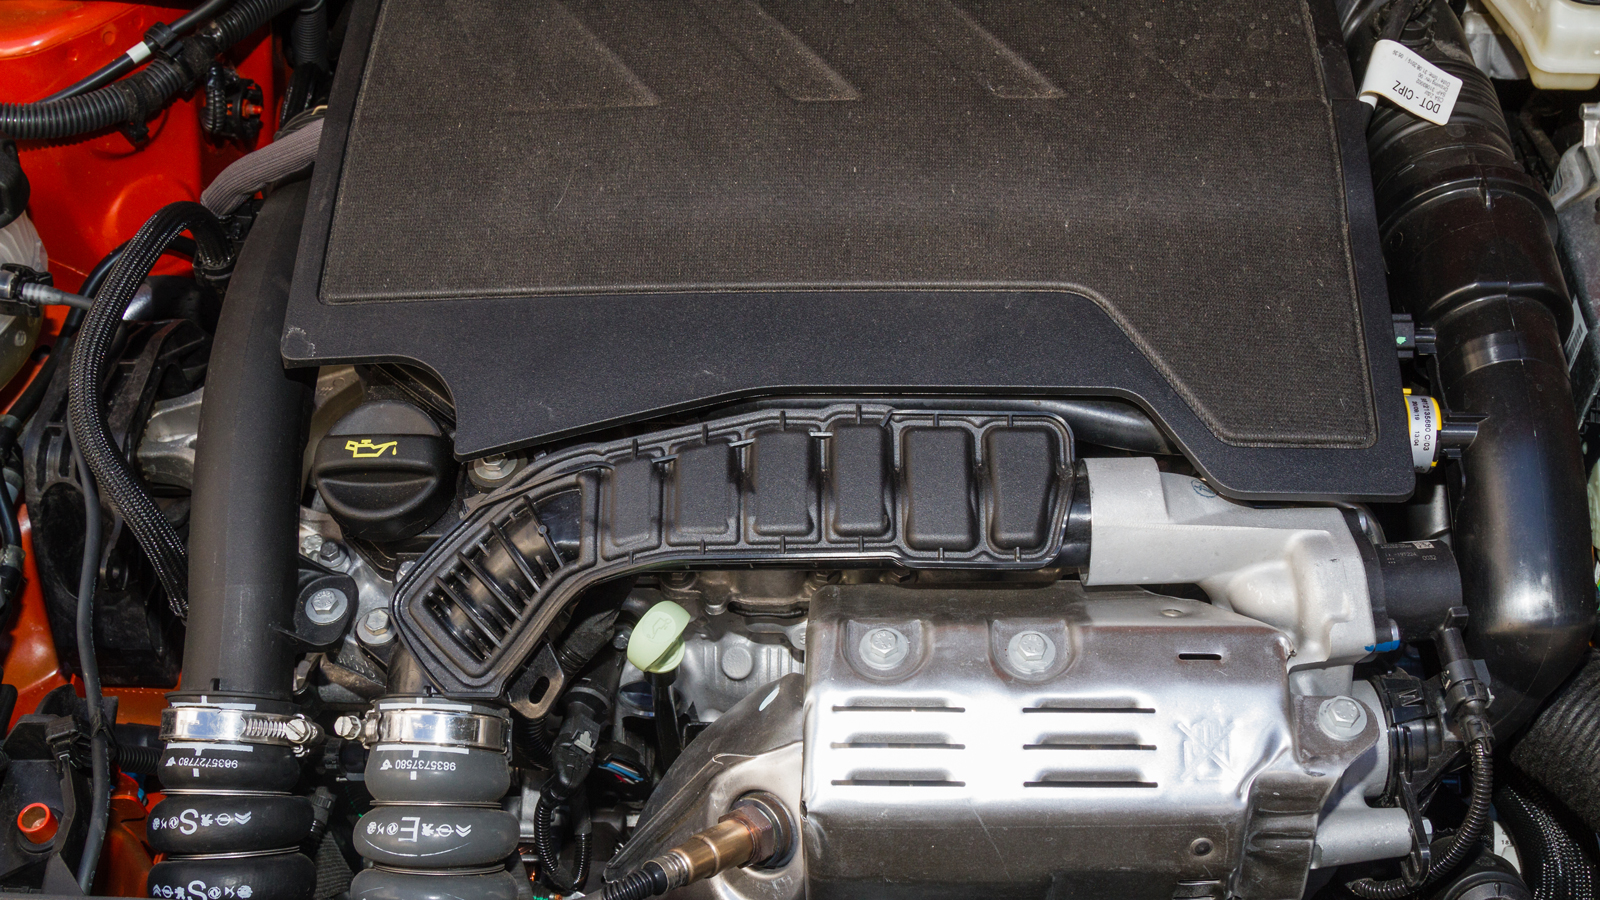 130 ίππους από 1200 κυβικά αποδίδει ο turbo τρικύλινδρος κινητήρας του Opel Corsa 